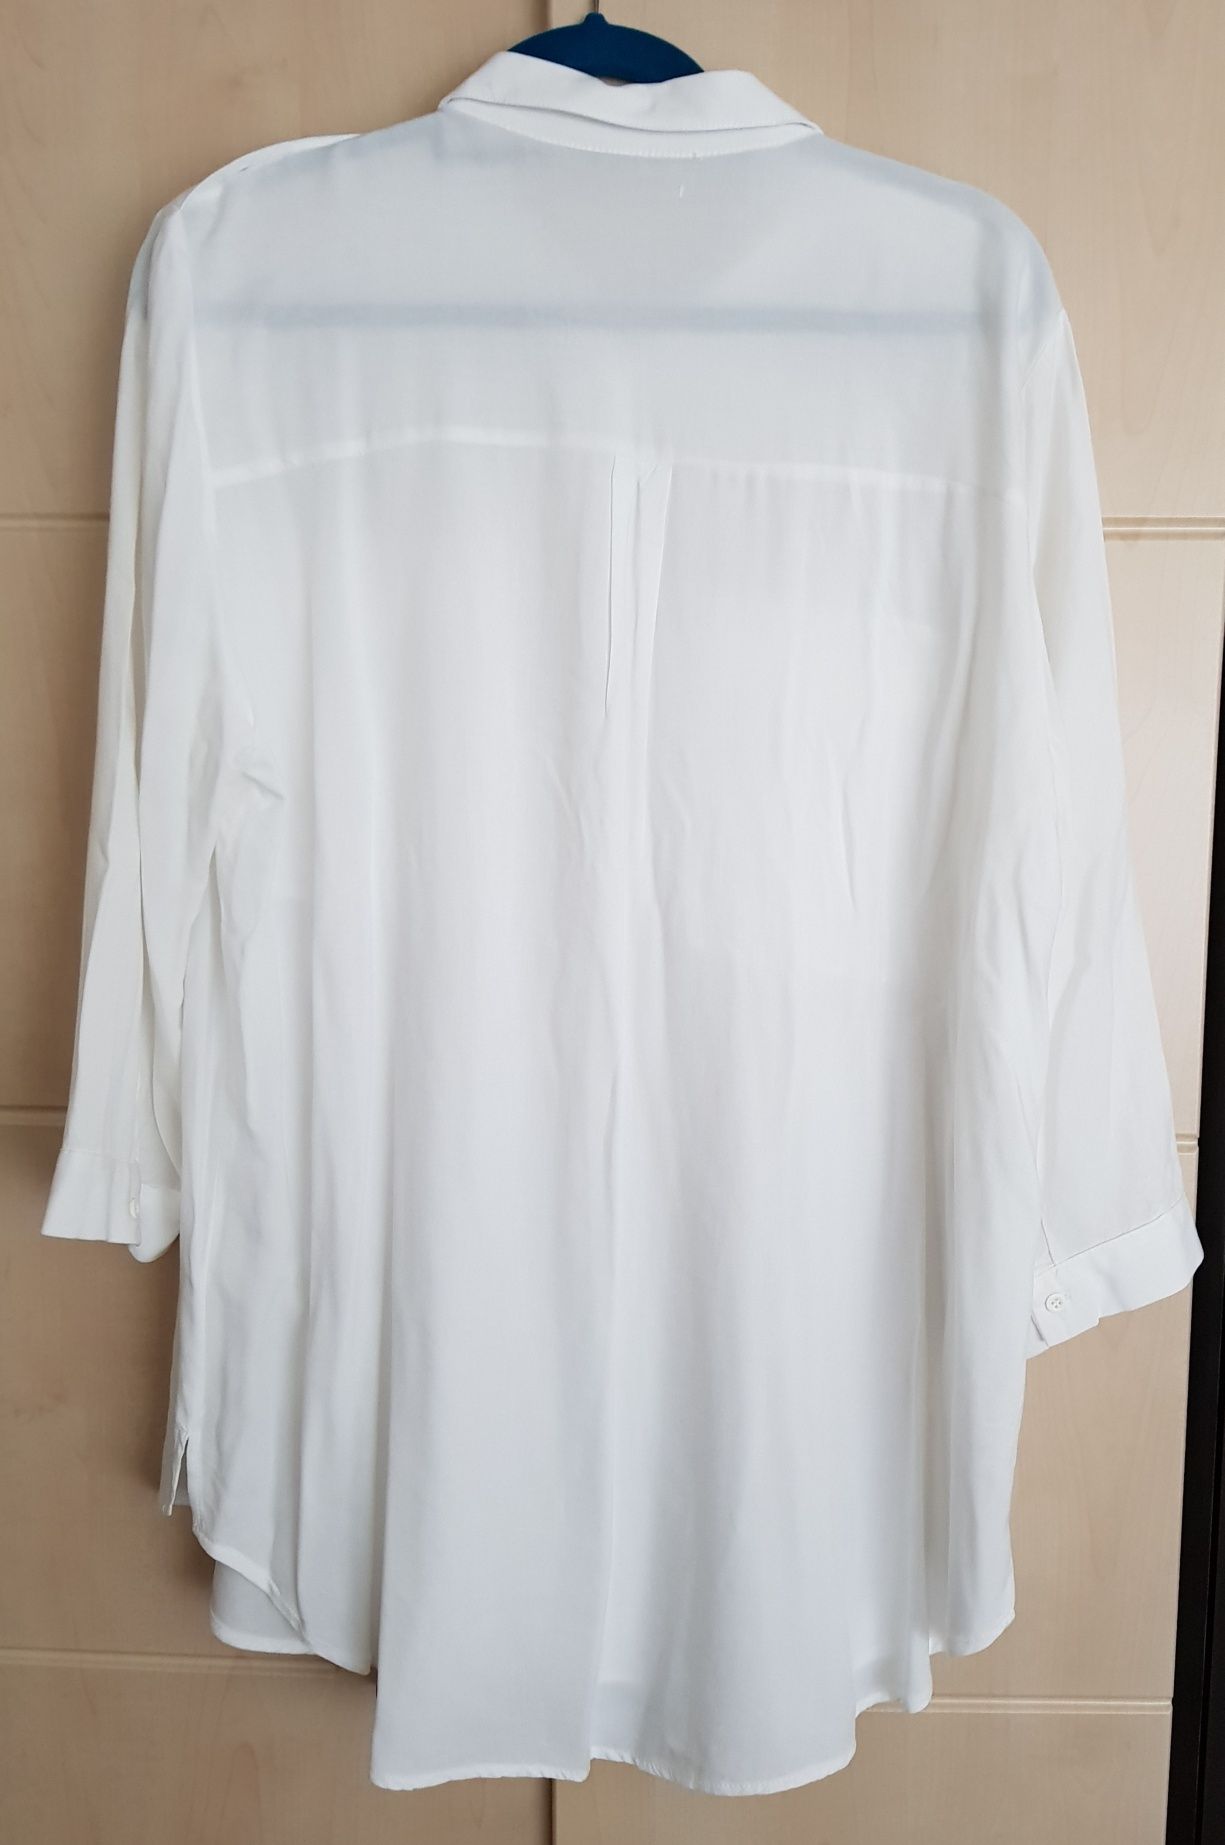 Koszula biała rękaw 3/4 rozmiar XL